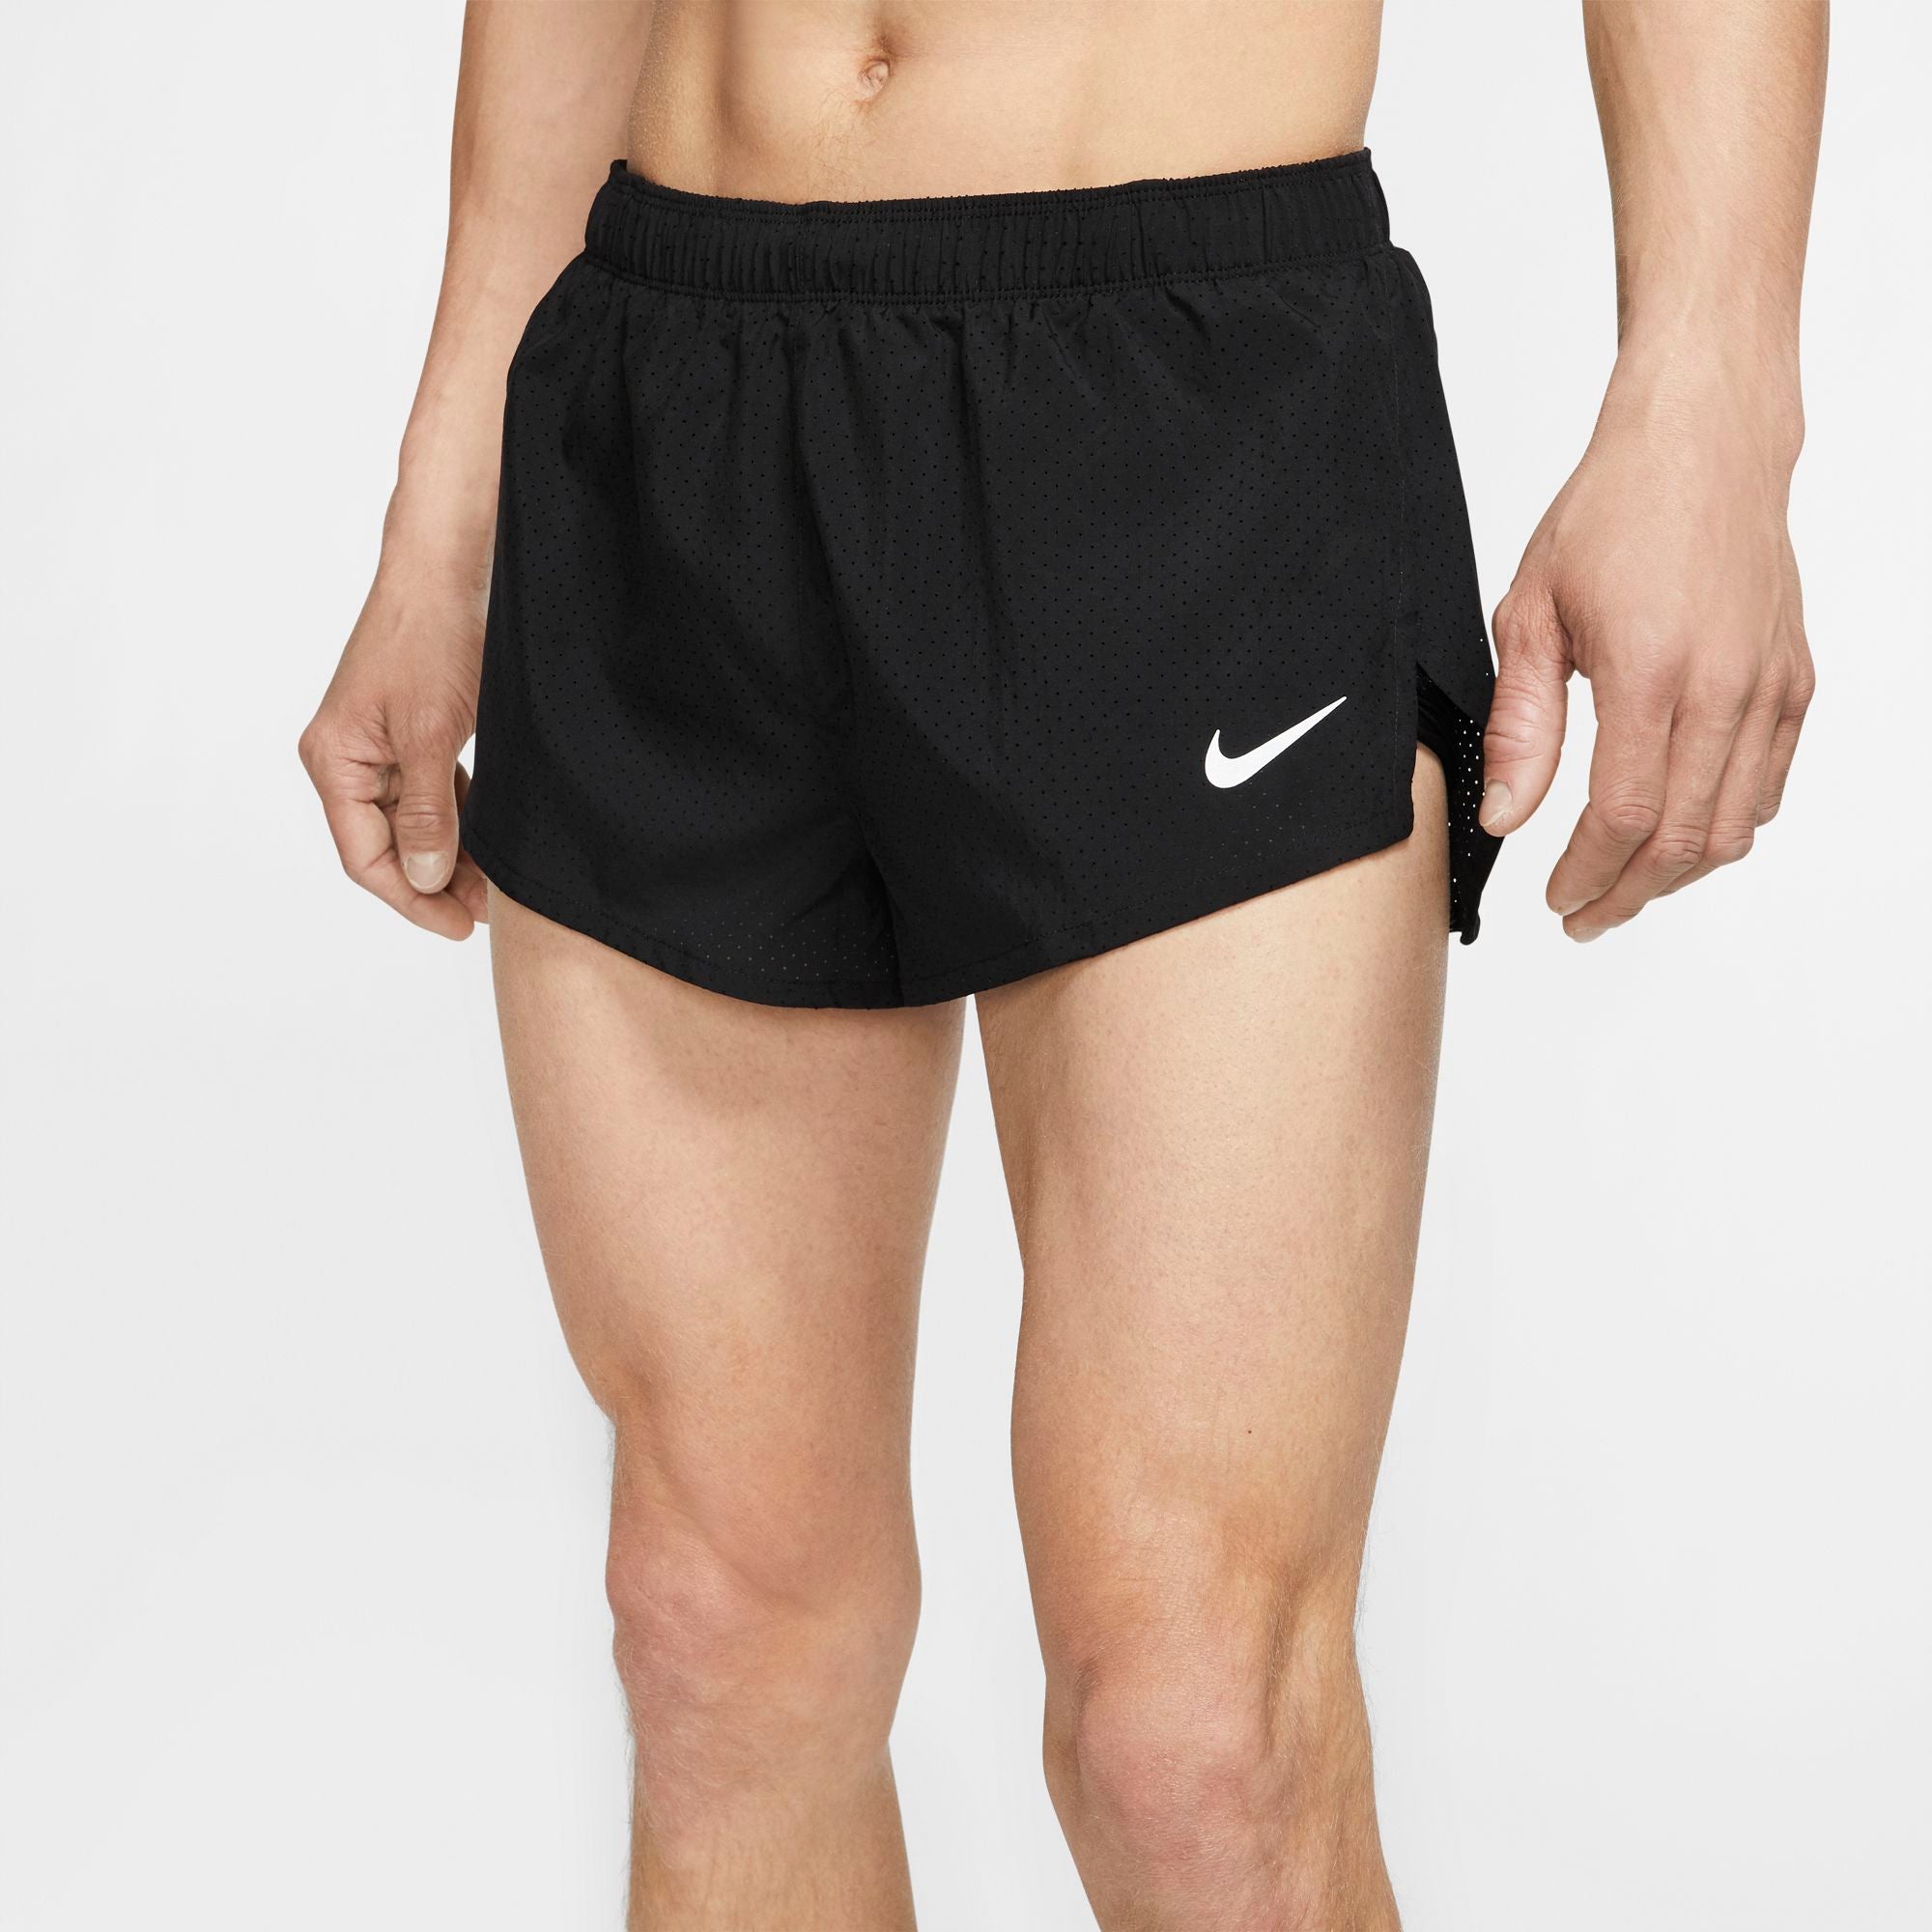 nike men's 2 inch running shorts